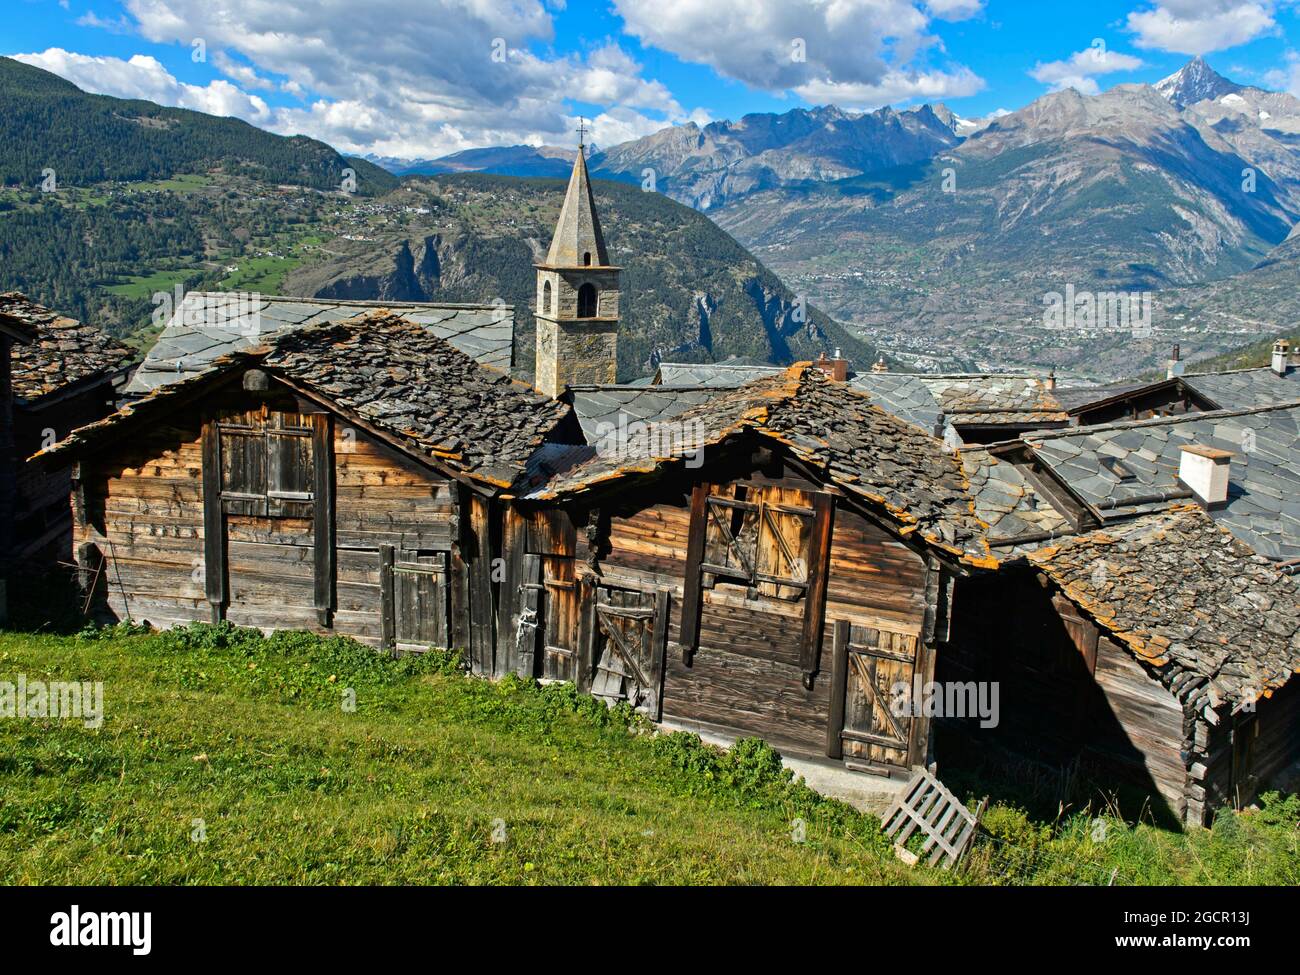 Restored wooden storage huts, Visperterminen, Valais, Switzerland Stock Photo